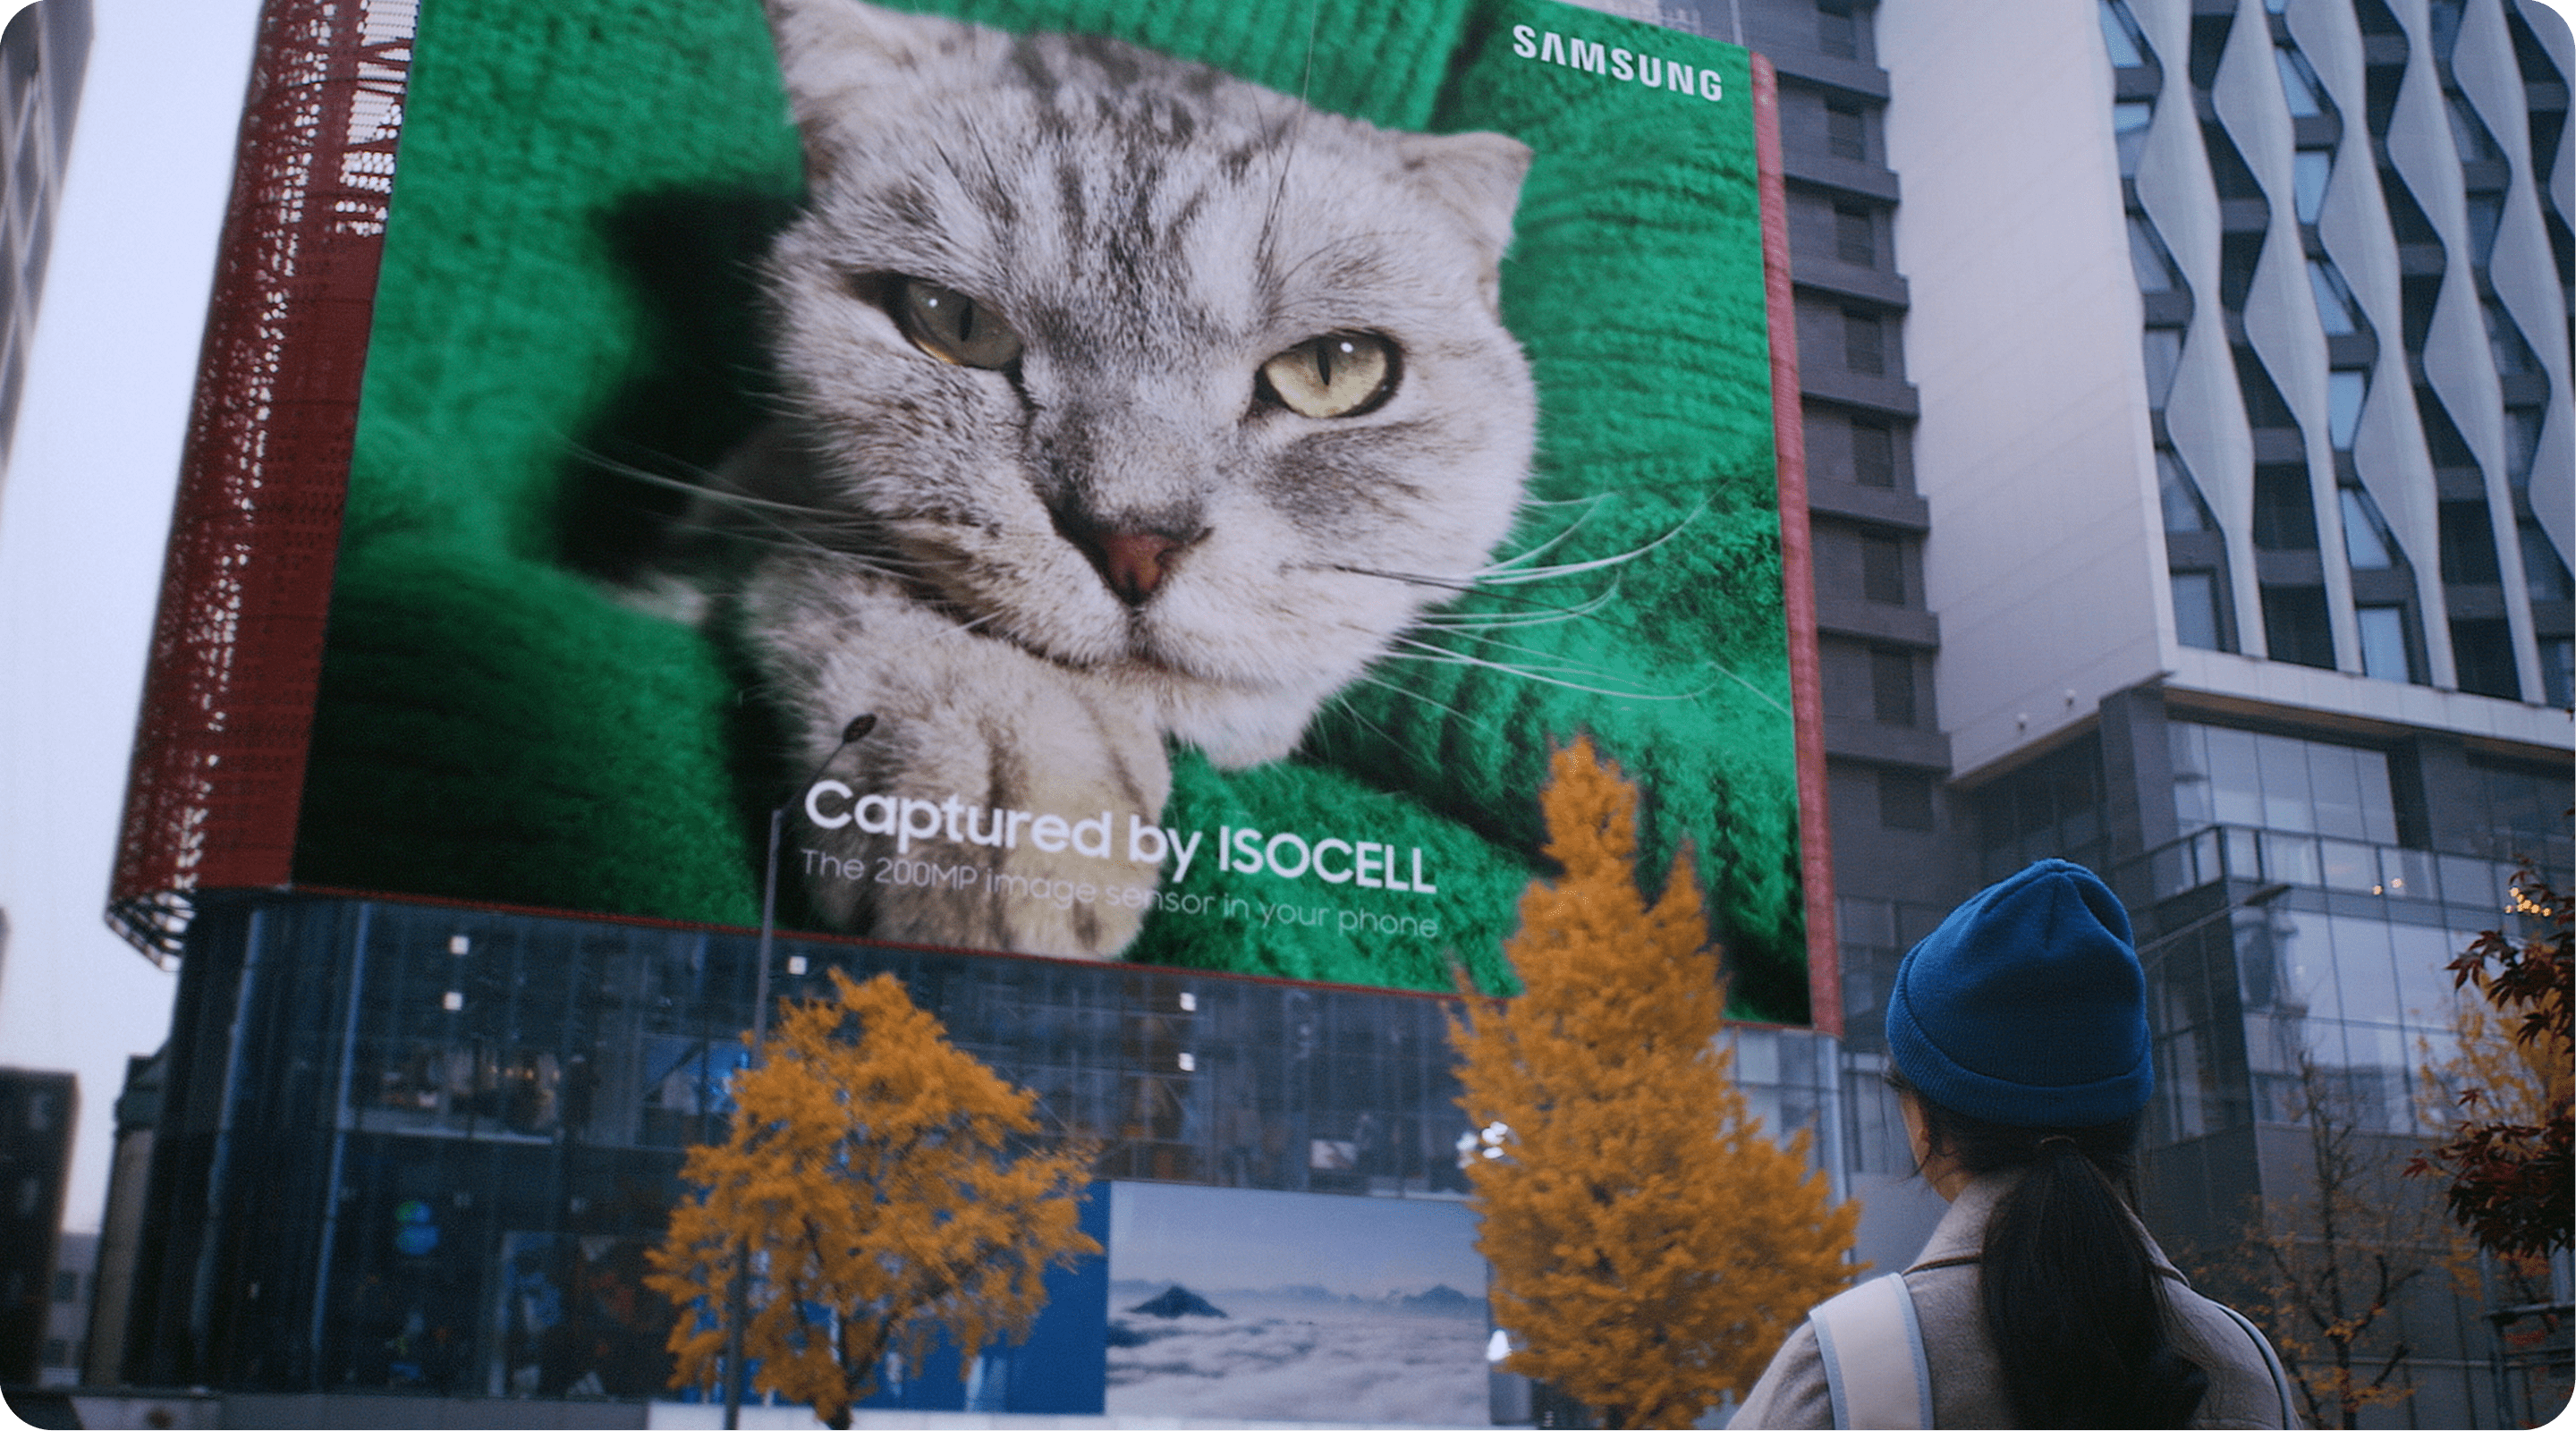 2億画素のサムスンのISOCELLイメージセンサーで制作した巨大な猫のプリントがビルに現れる